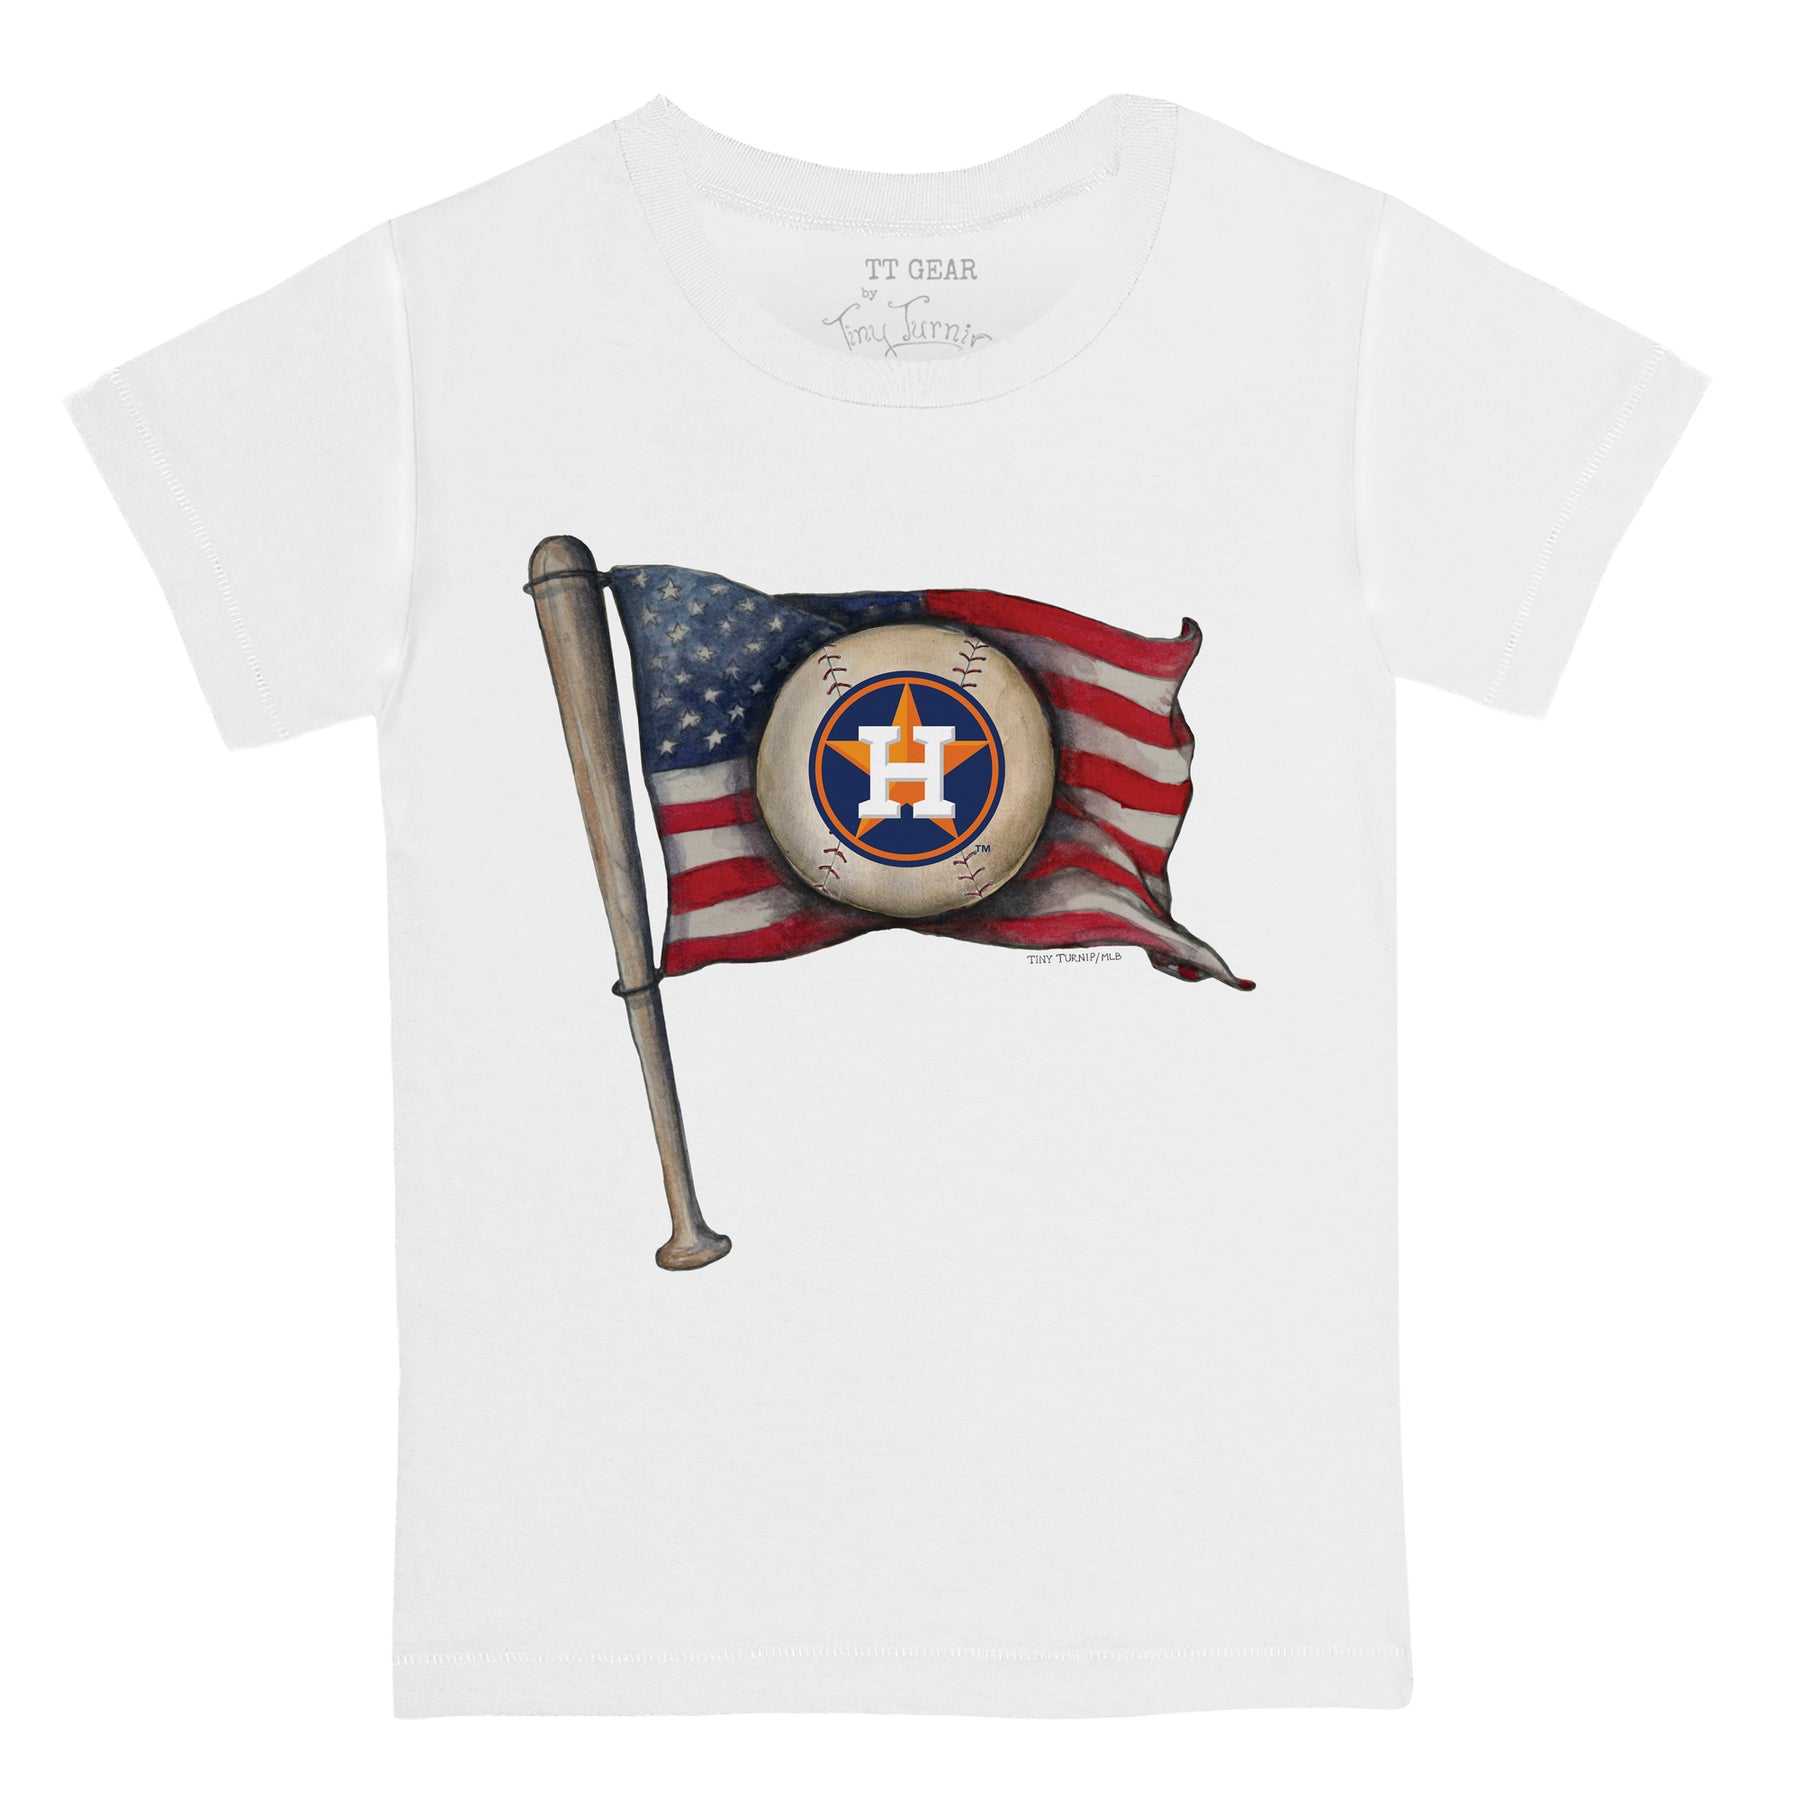 Girls Youth Tiny Turnip White Houston Astros Baseball Love Fringe T-Shirt Size: Extra Large